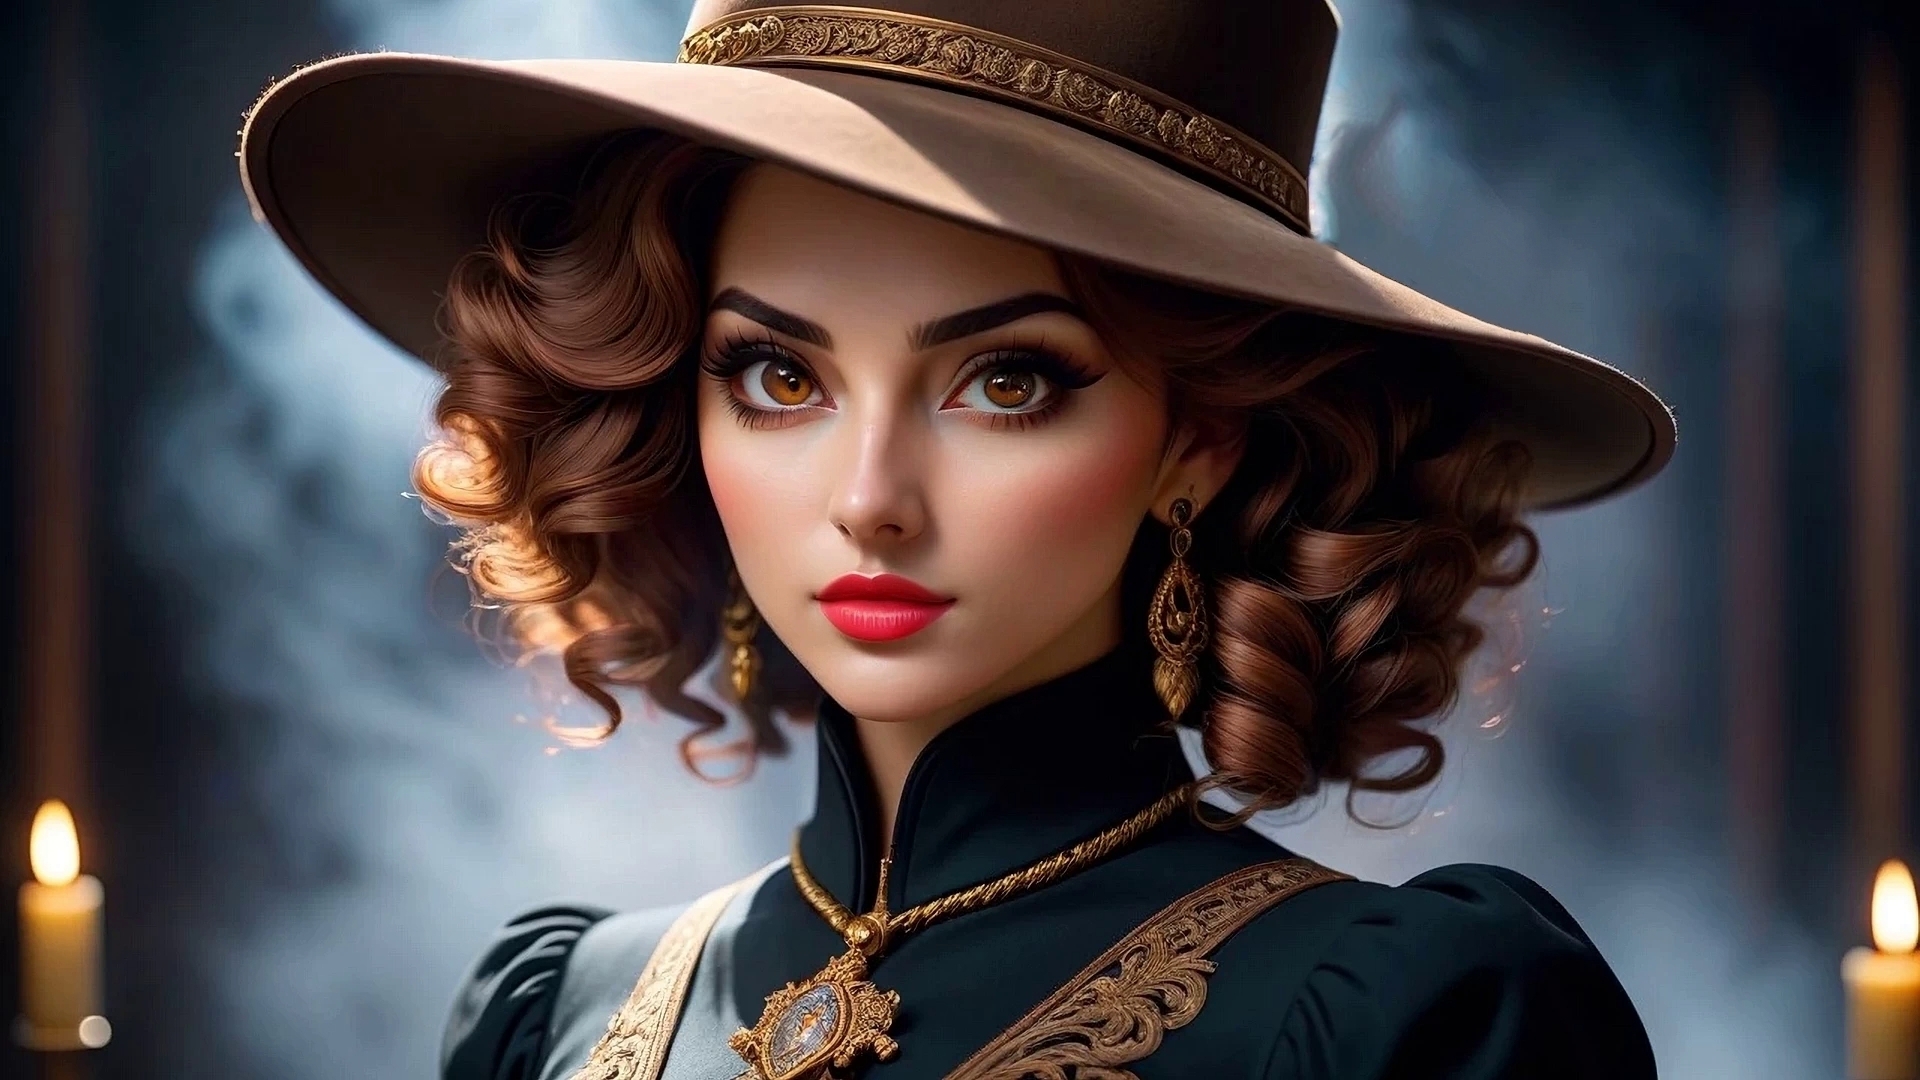 Бесплатное фото Портрет девушки в красивой широкополой шляпе